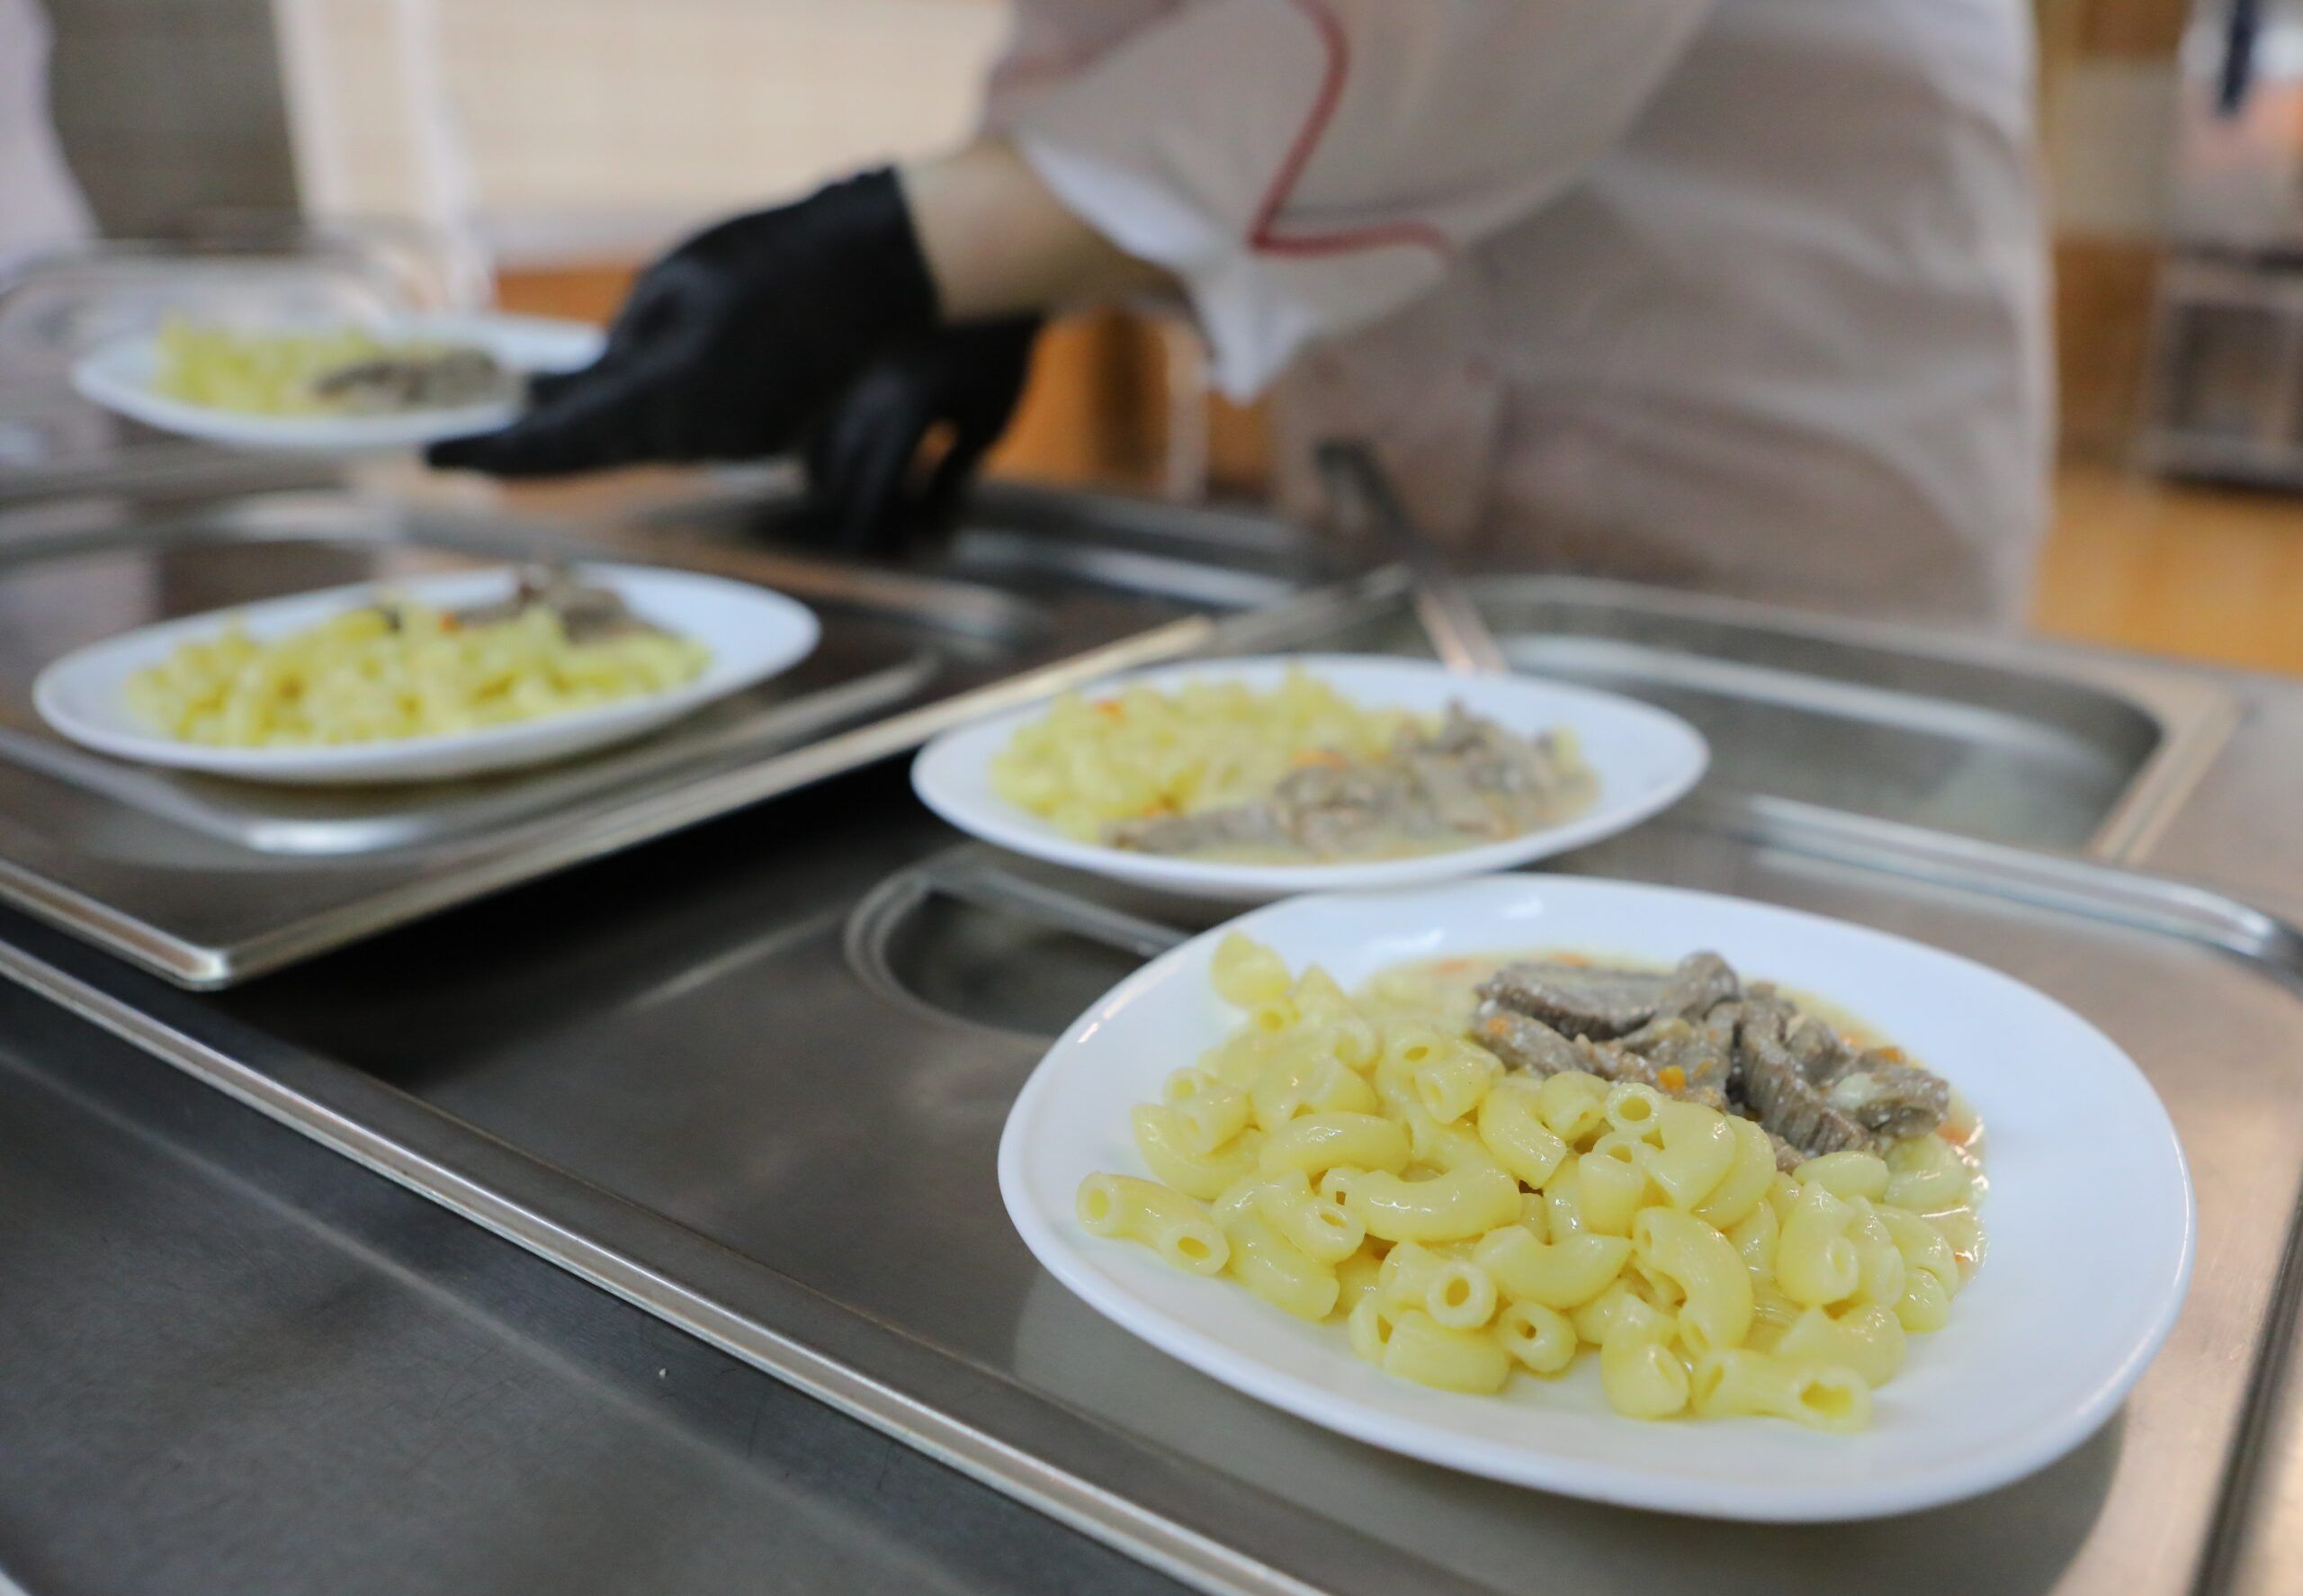 Беглов распорядился повысить калорийность блюд в петербургских школах, игнорируя правила СанПиН